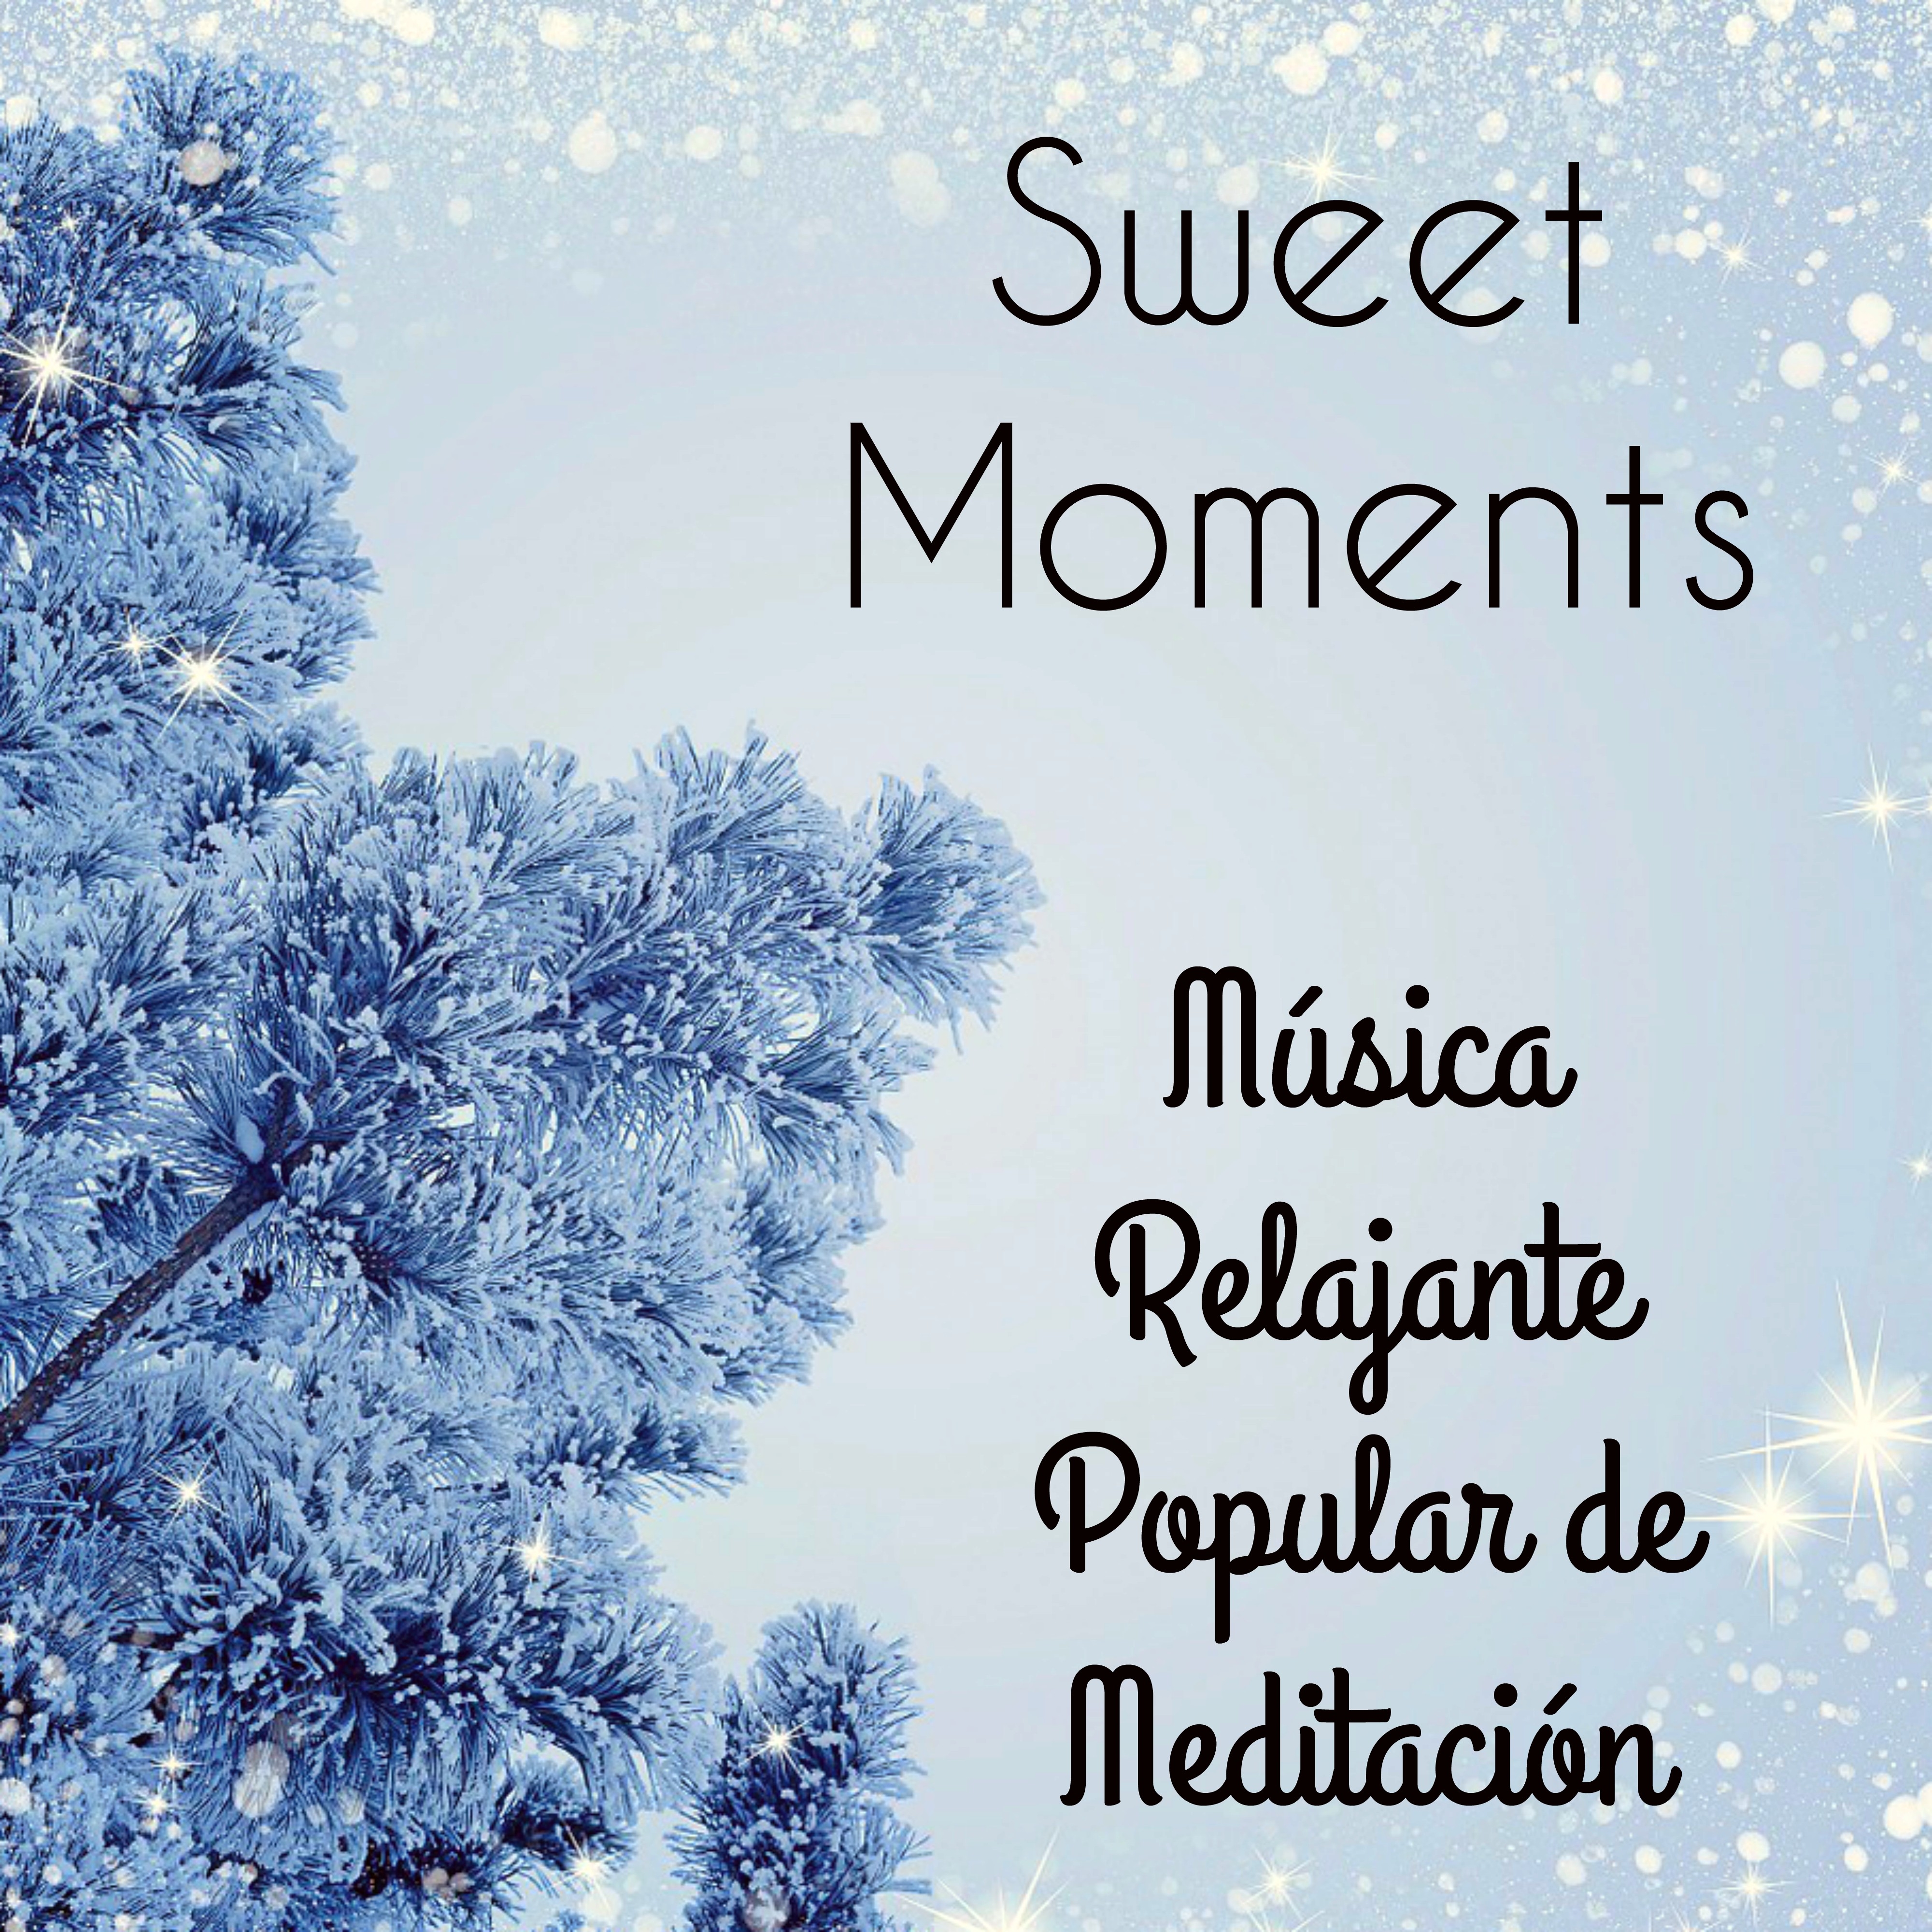 Sweet Moments - Música Relajante Popular de Meditación para Efecto de la Copos de Nieve y Vacaciones de Invierno